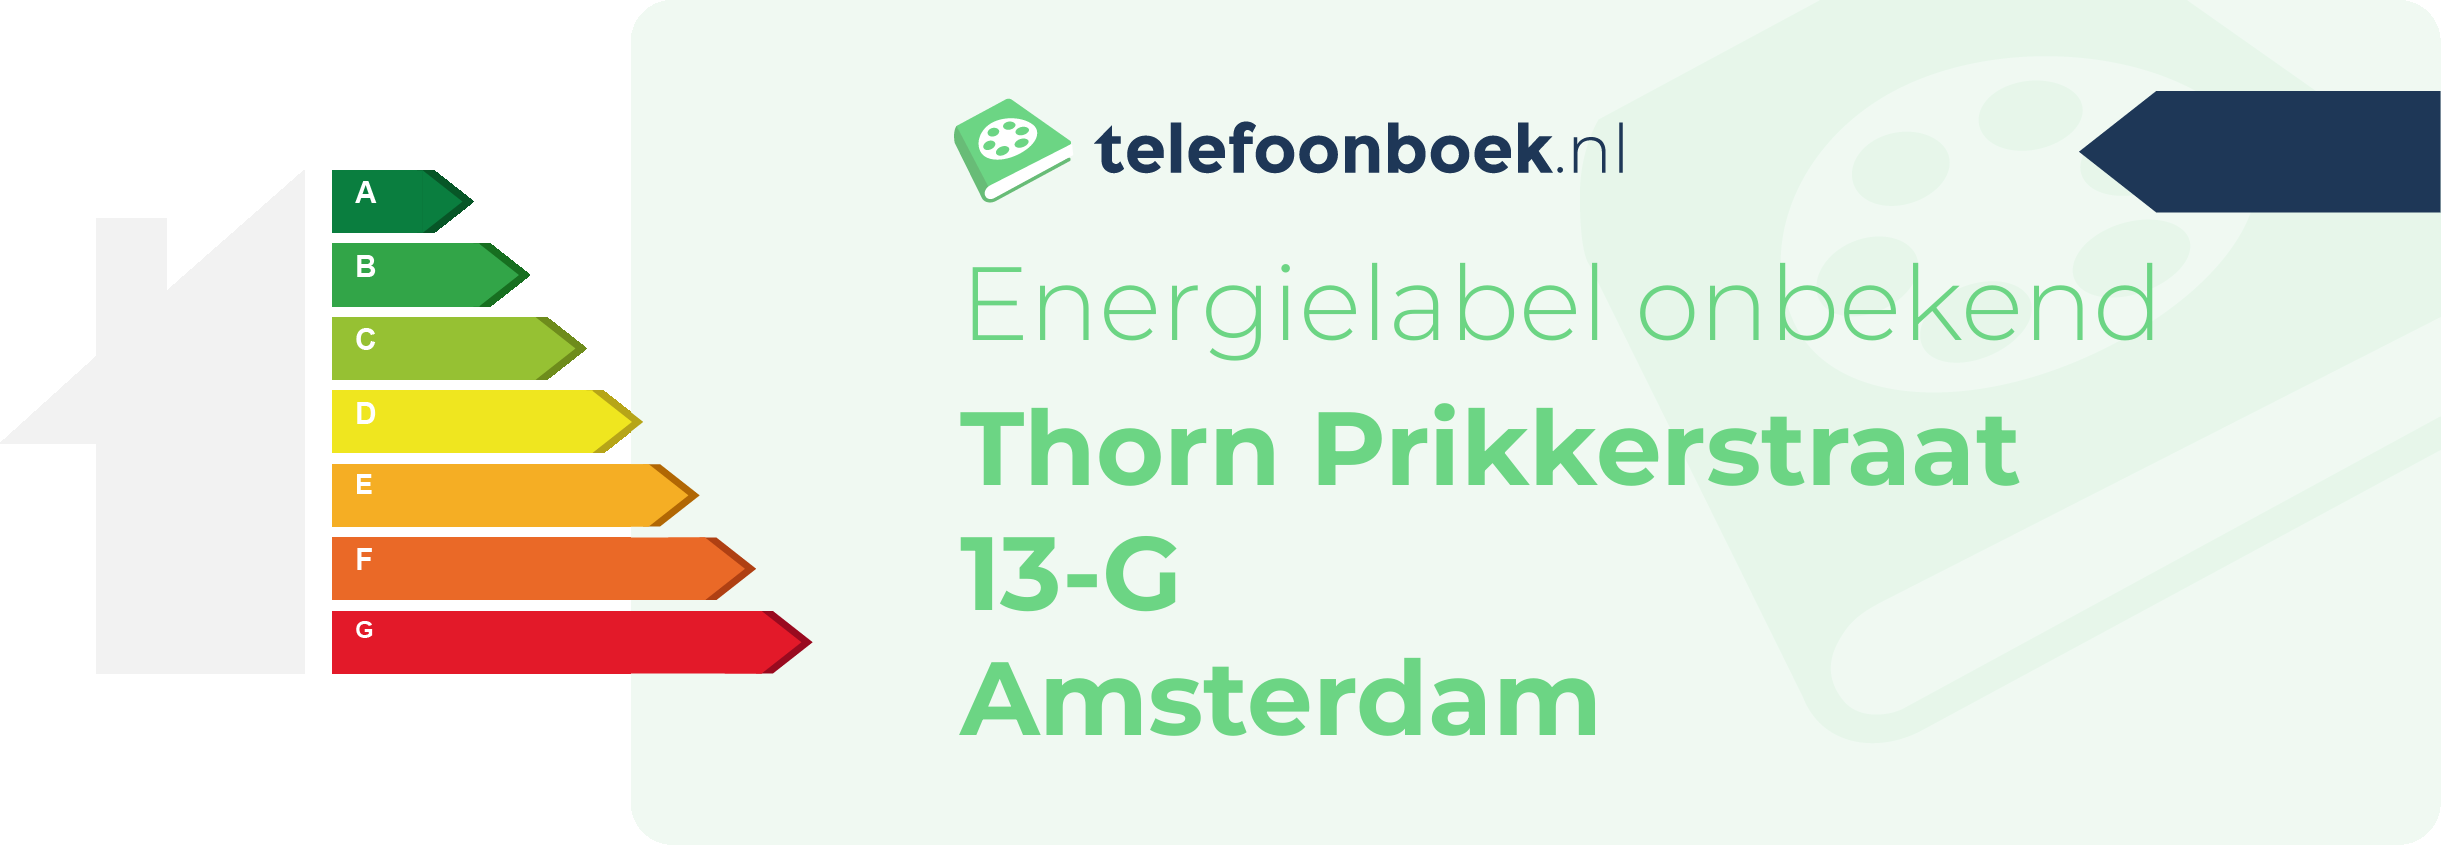 Energielabel Thorn Prikkerstraat 13-G Amsterdam